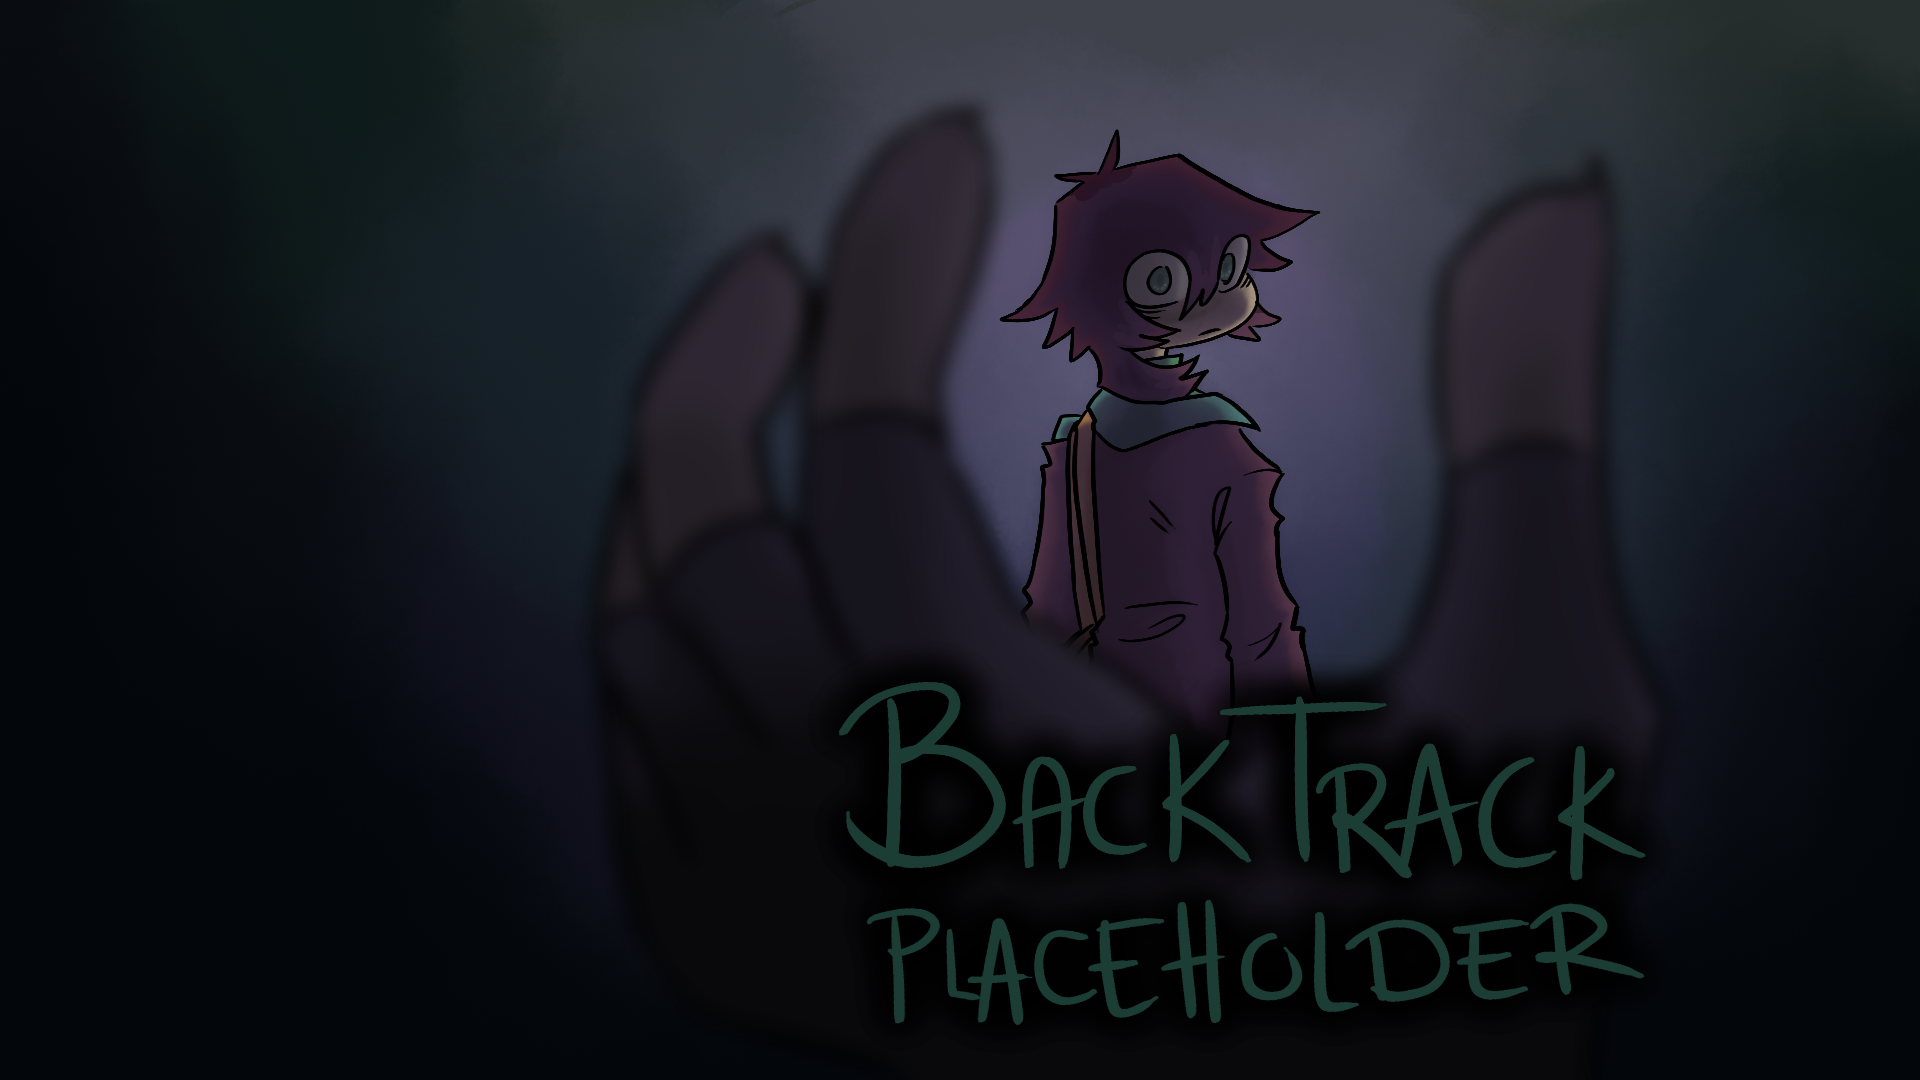 BackTrack Placeholder